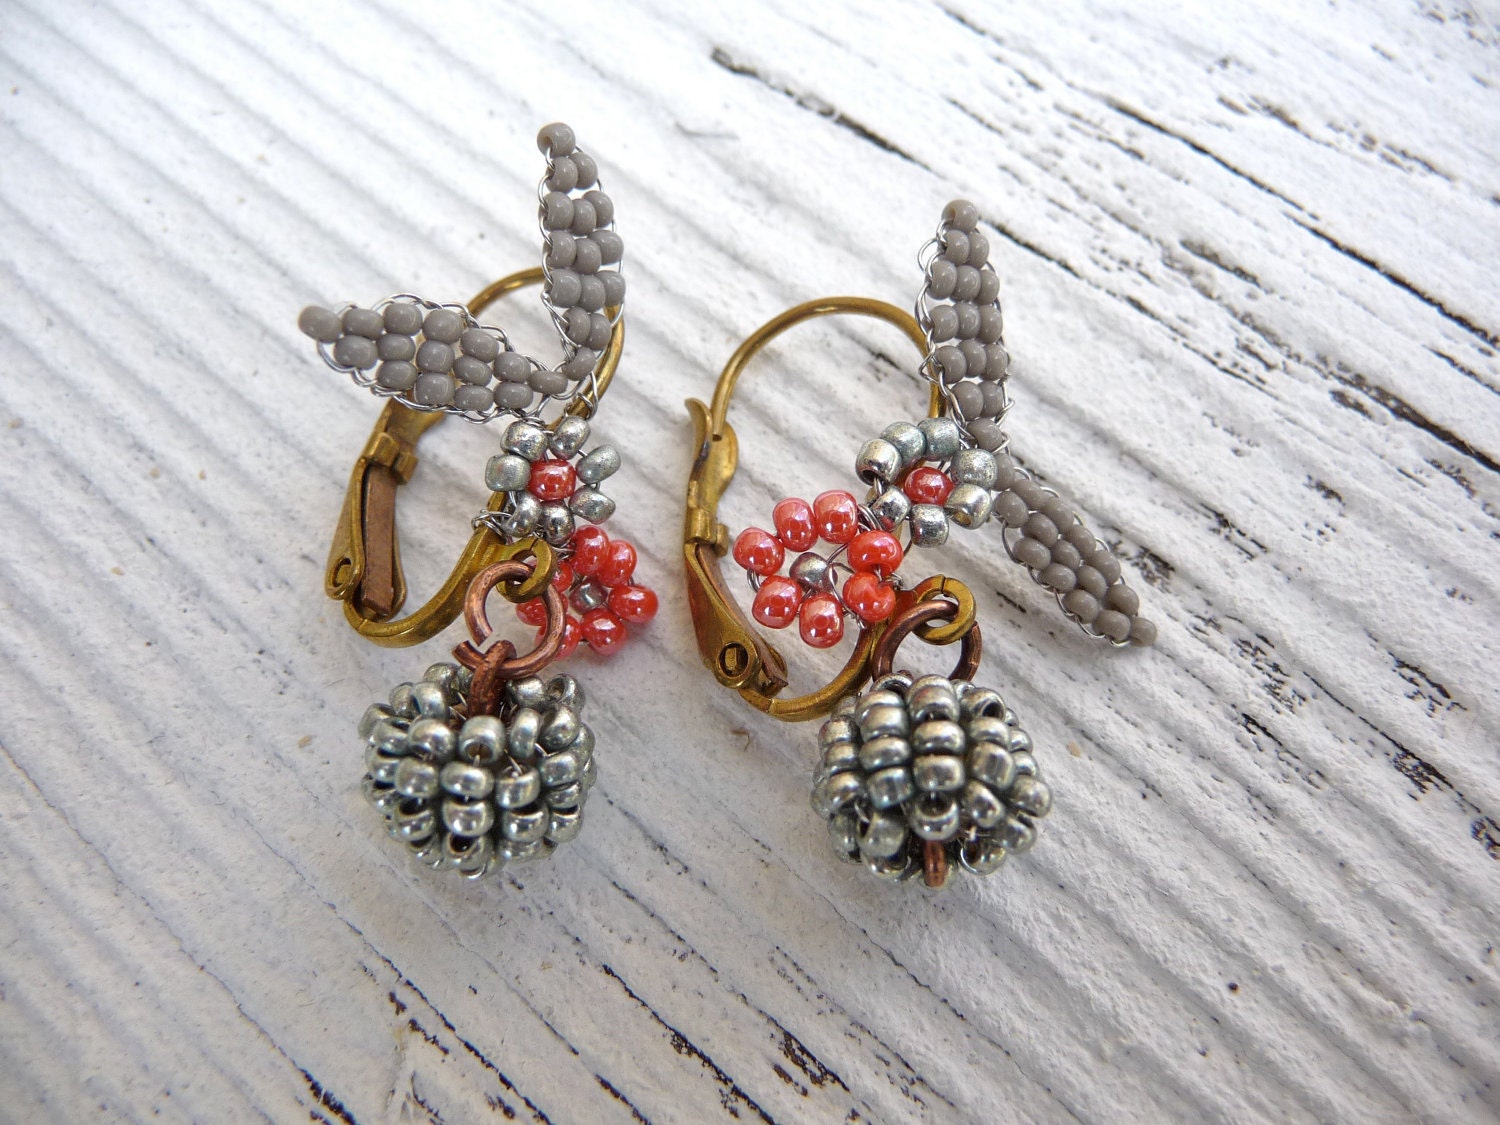 Fruits de la foret exquisite tiny Antique glass beads earrings